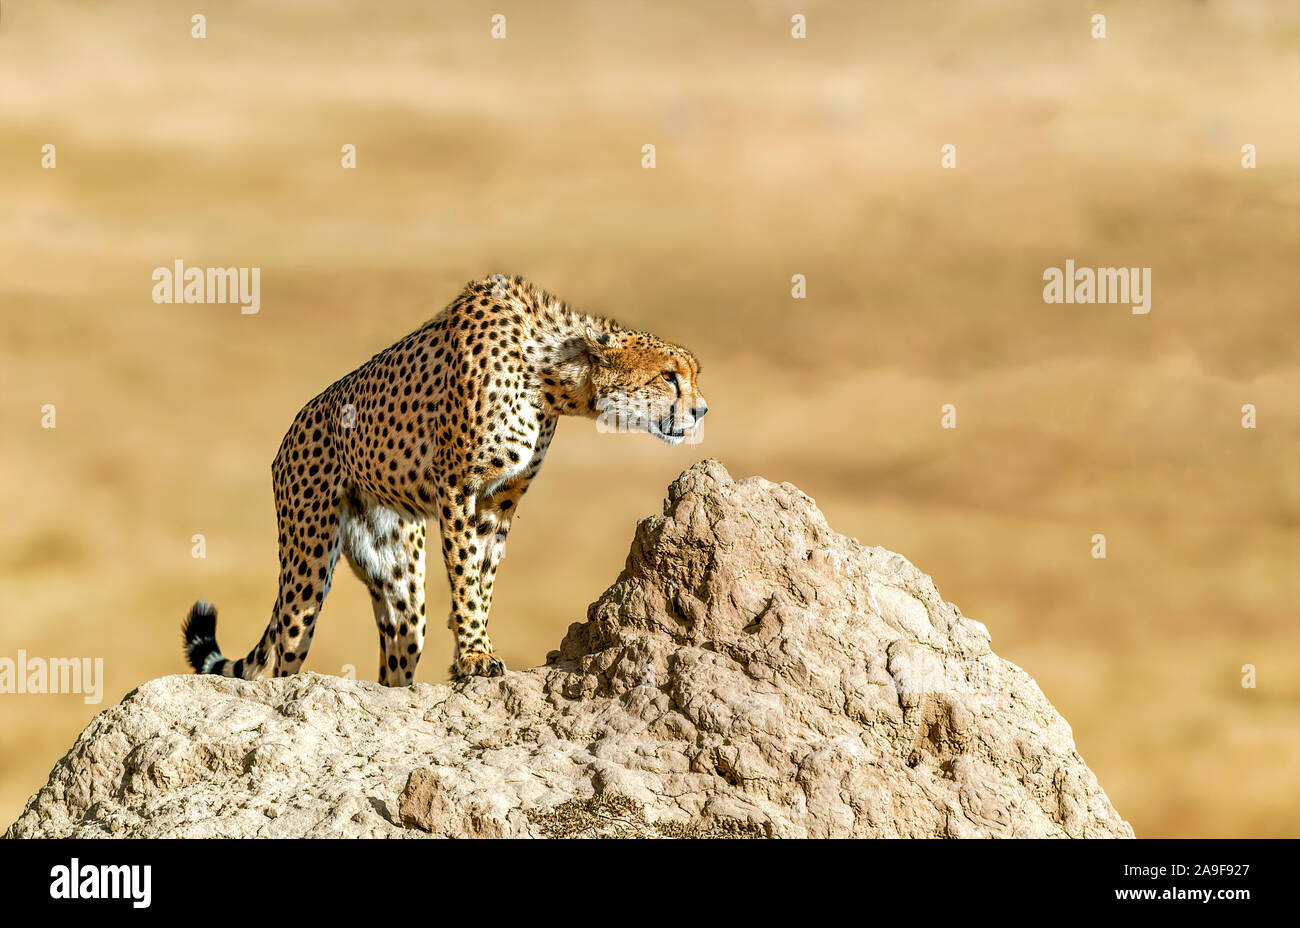 Cheetah Hunting in Masai Mara National Park, Kenya Stock Photo